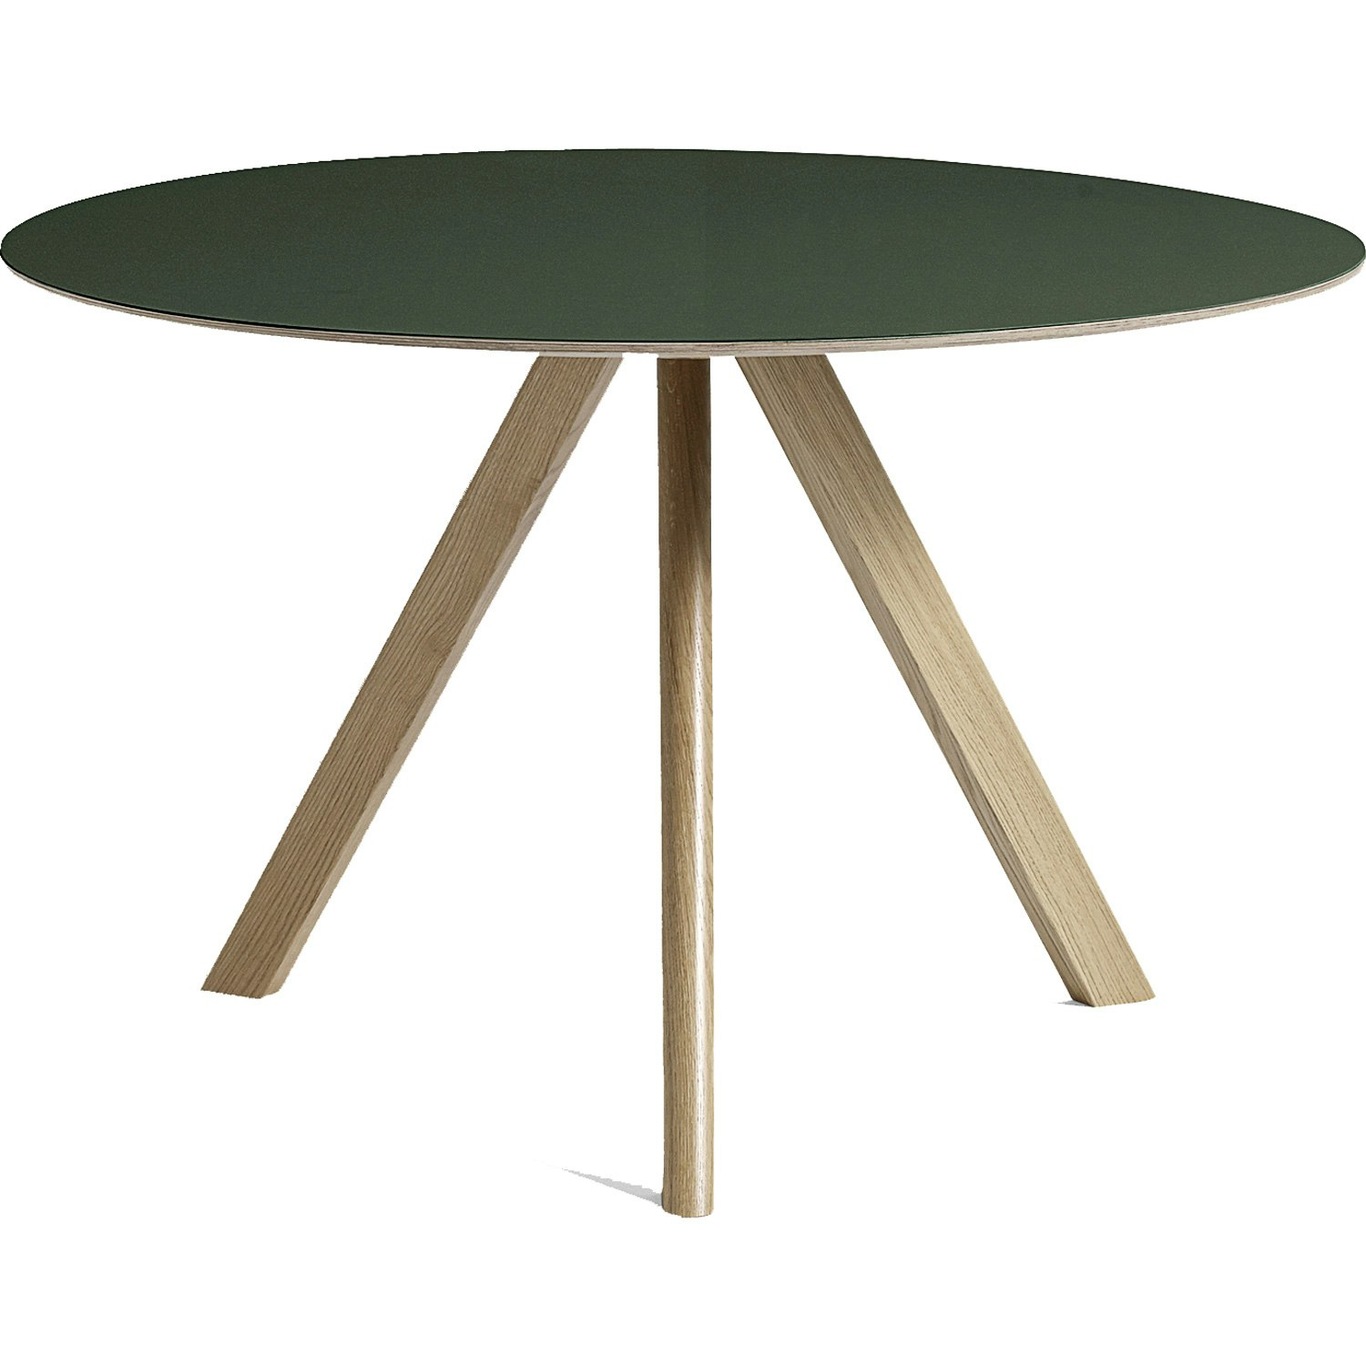 CPH20 Tisch Ø120 cm, Mit Lack Auf Wasserbasis Lackiert Eiche / Grün Linoleum